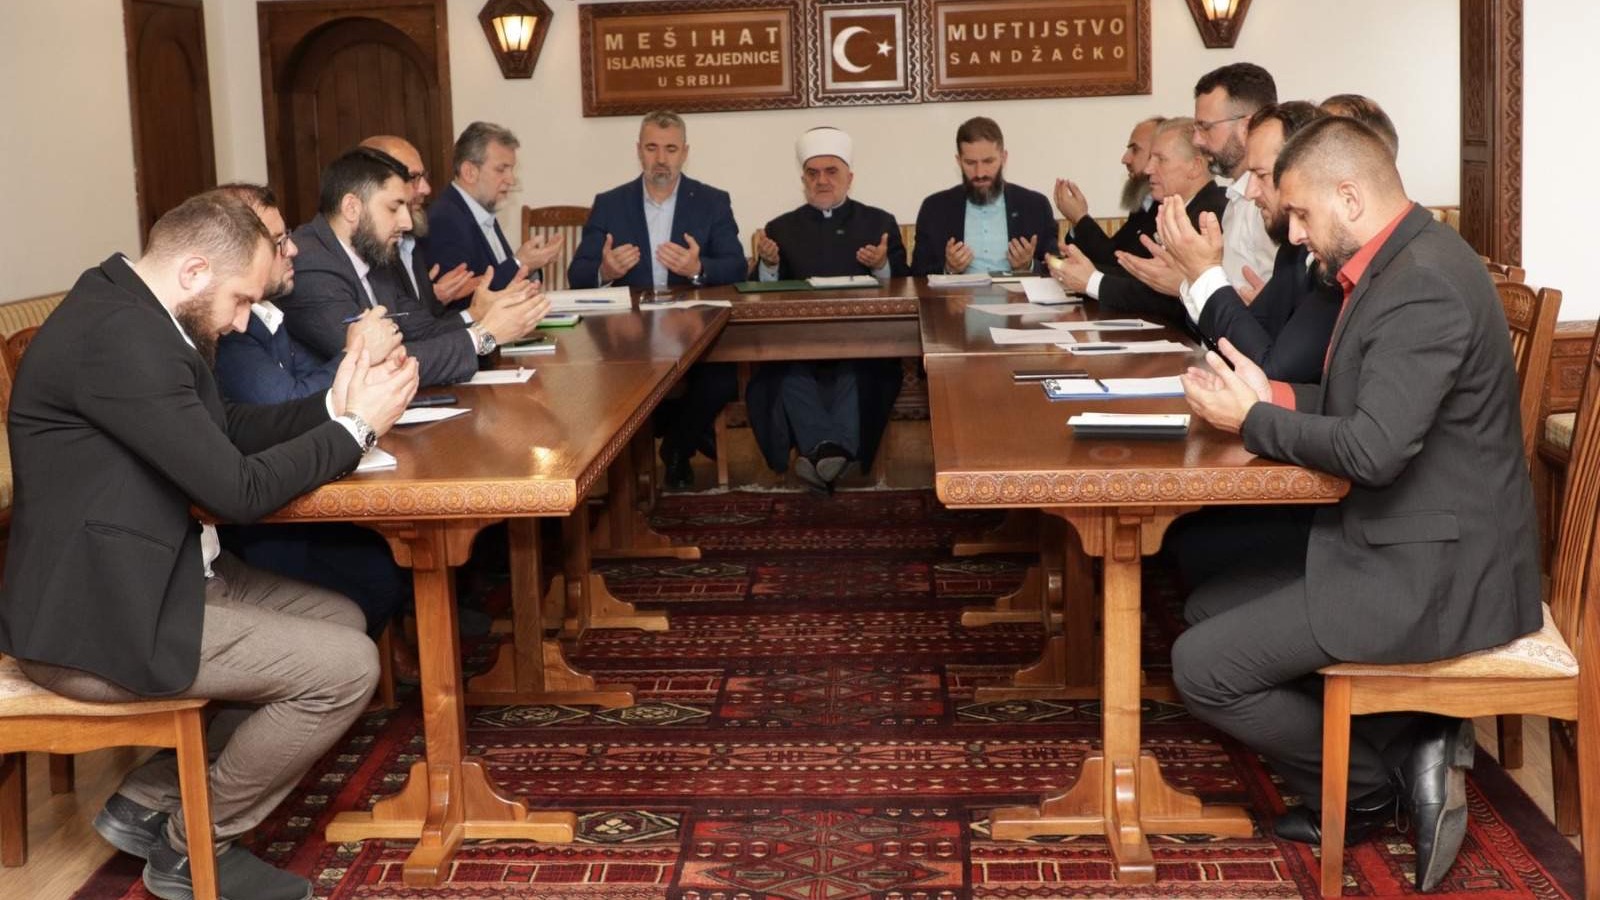 Imenovani rukovodioci tri ustanove Mešihata Islamske zajednice u Srbiji